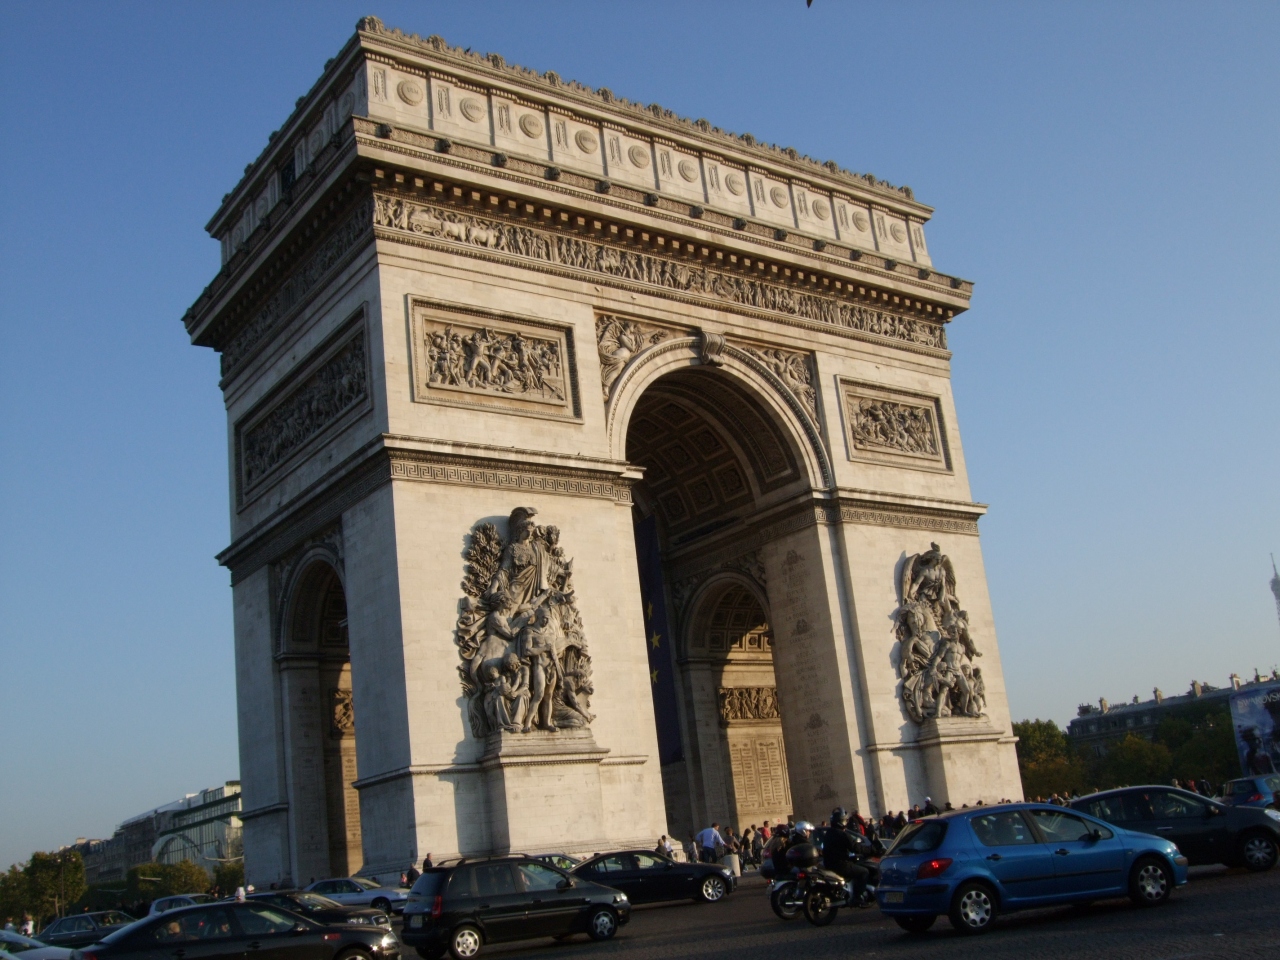 パリ モロッコ スペインそしてロンドン周遊の旅 2 パリへの到着 パリ フランス の旅行記 ブログ By Worldspanさん フォートラベル